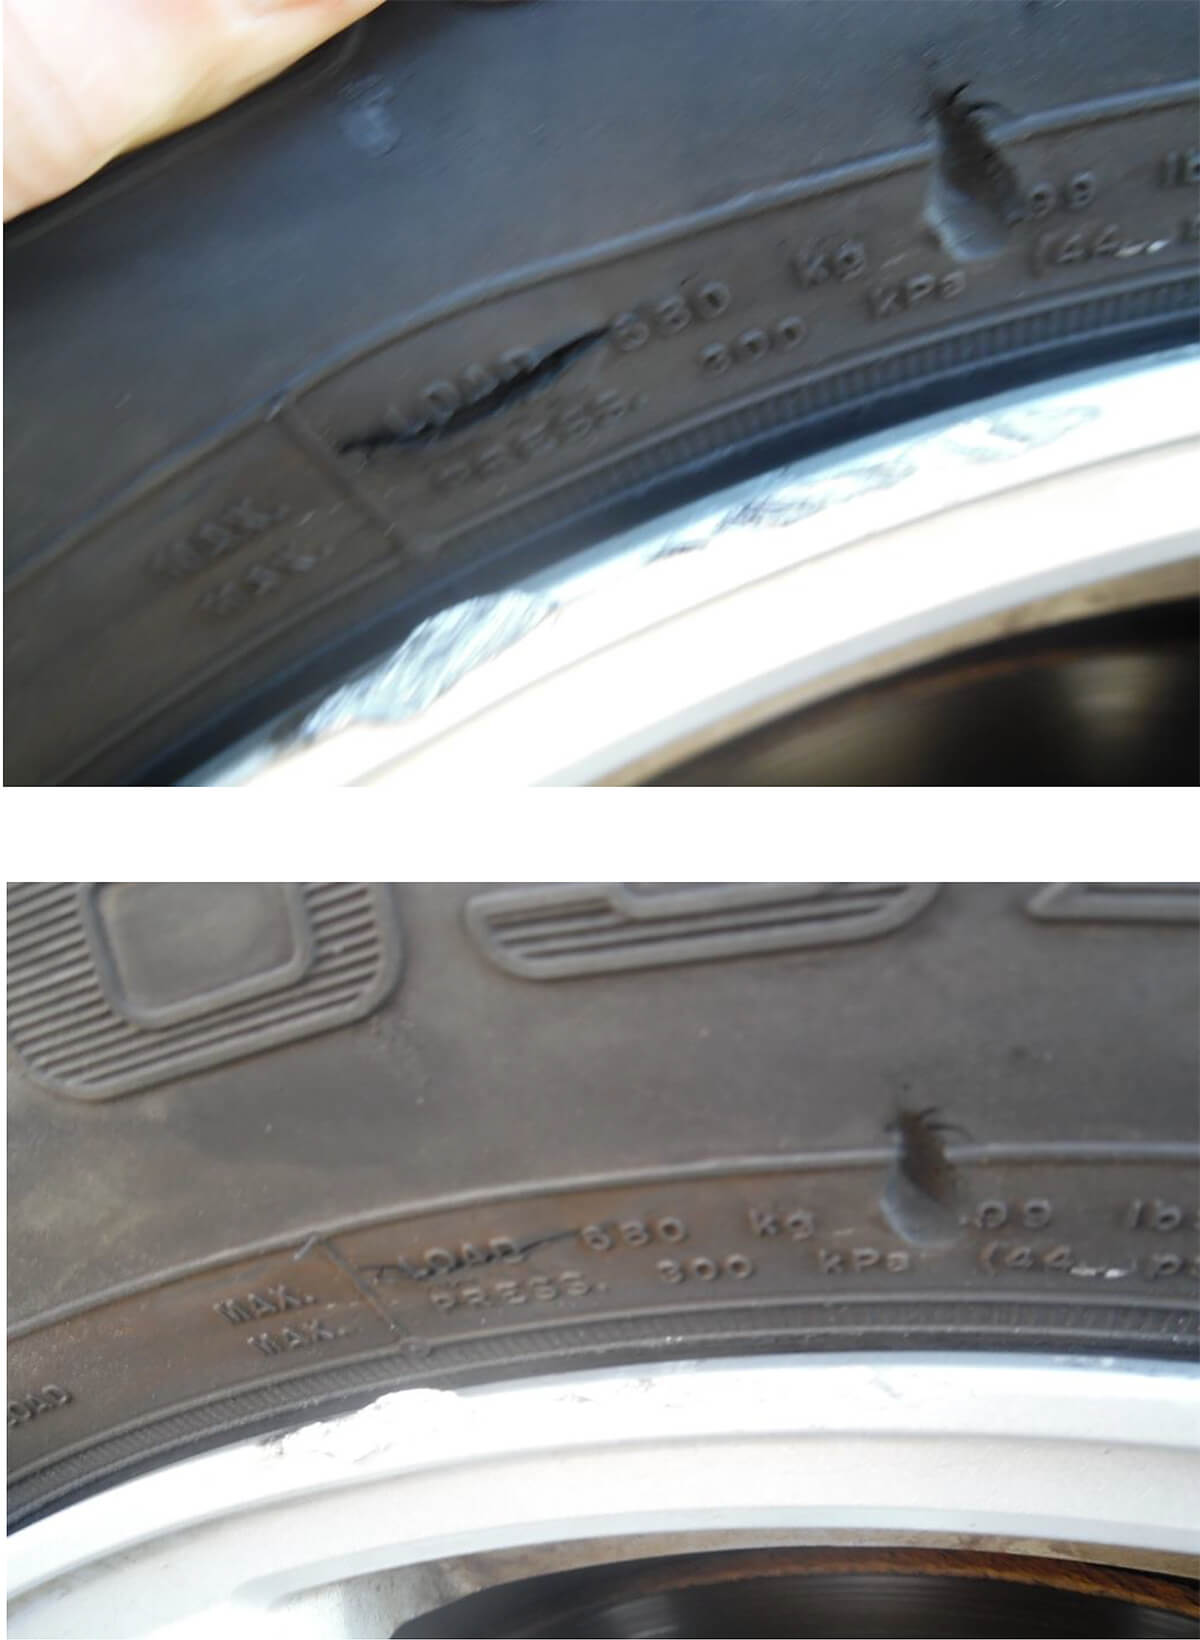 Gouged Tire & Scraped Rim